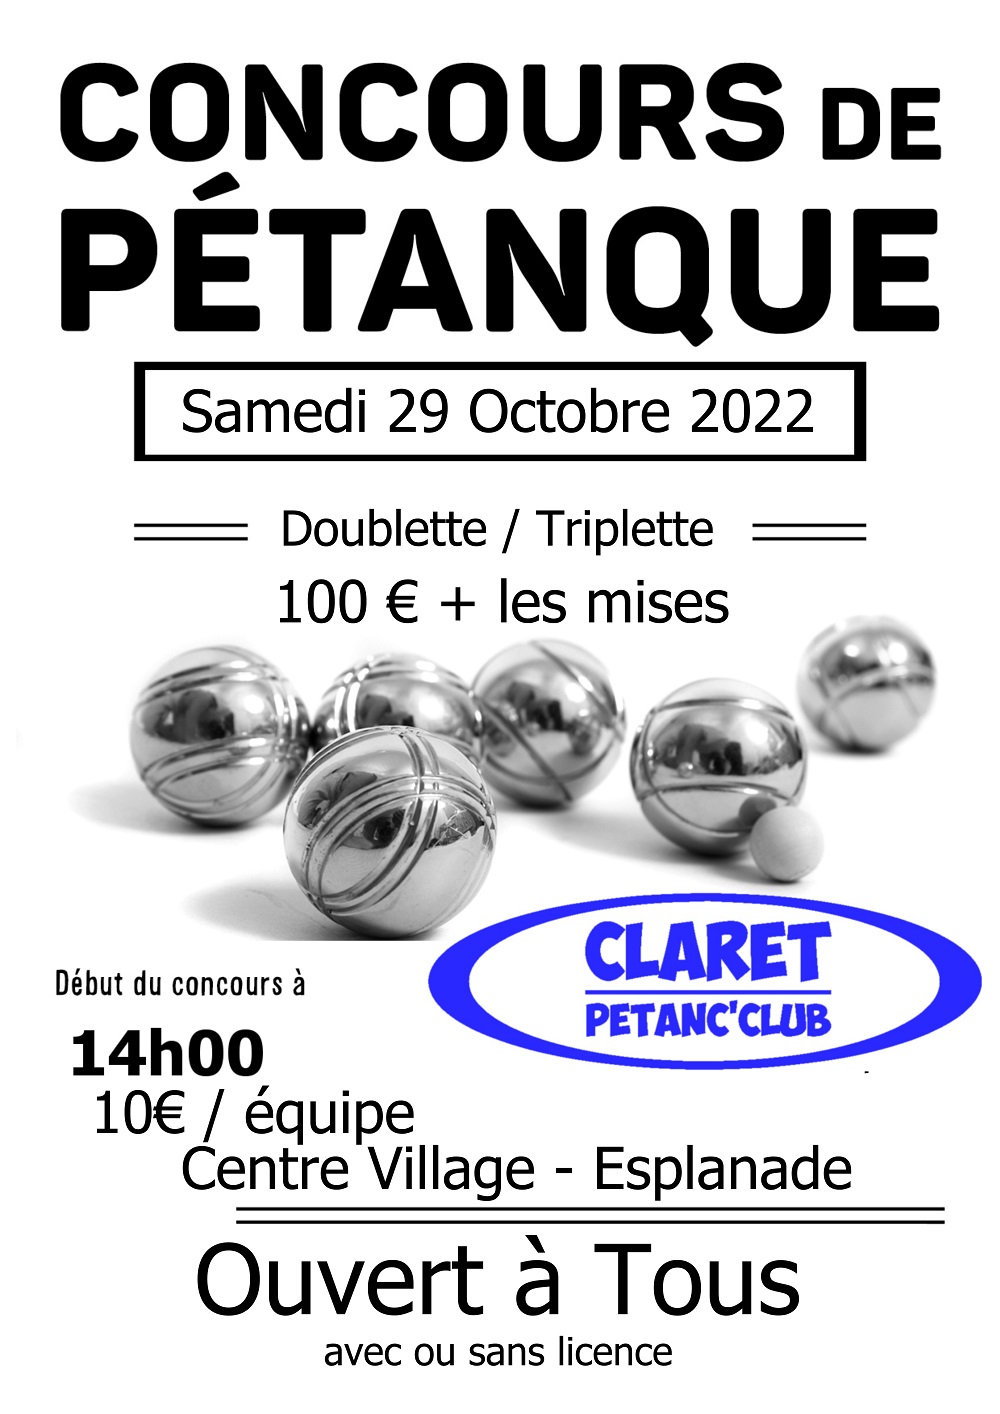 Concours de Pétanque - Actualité du club de pétanque CLARET PETANC CLUB